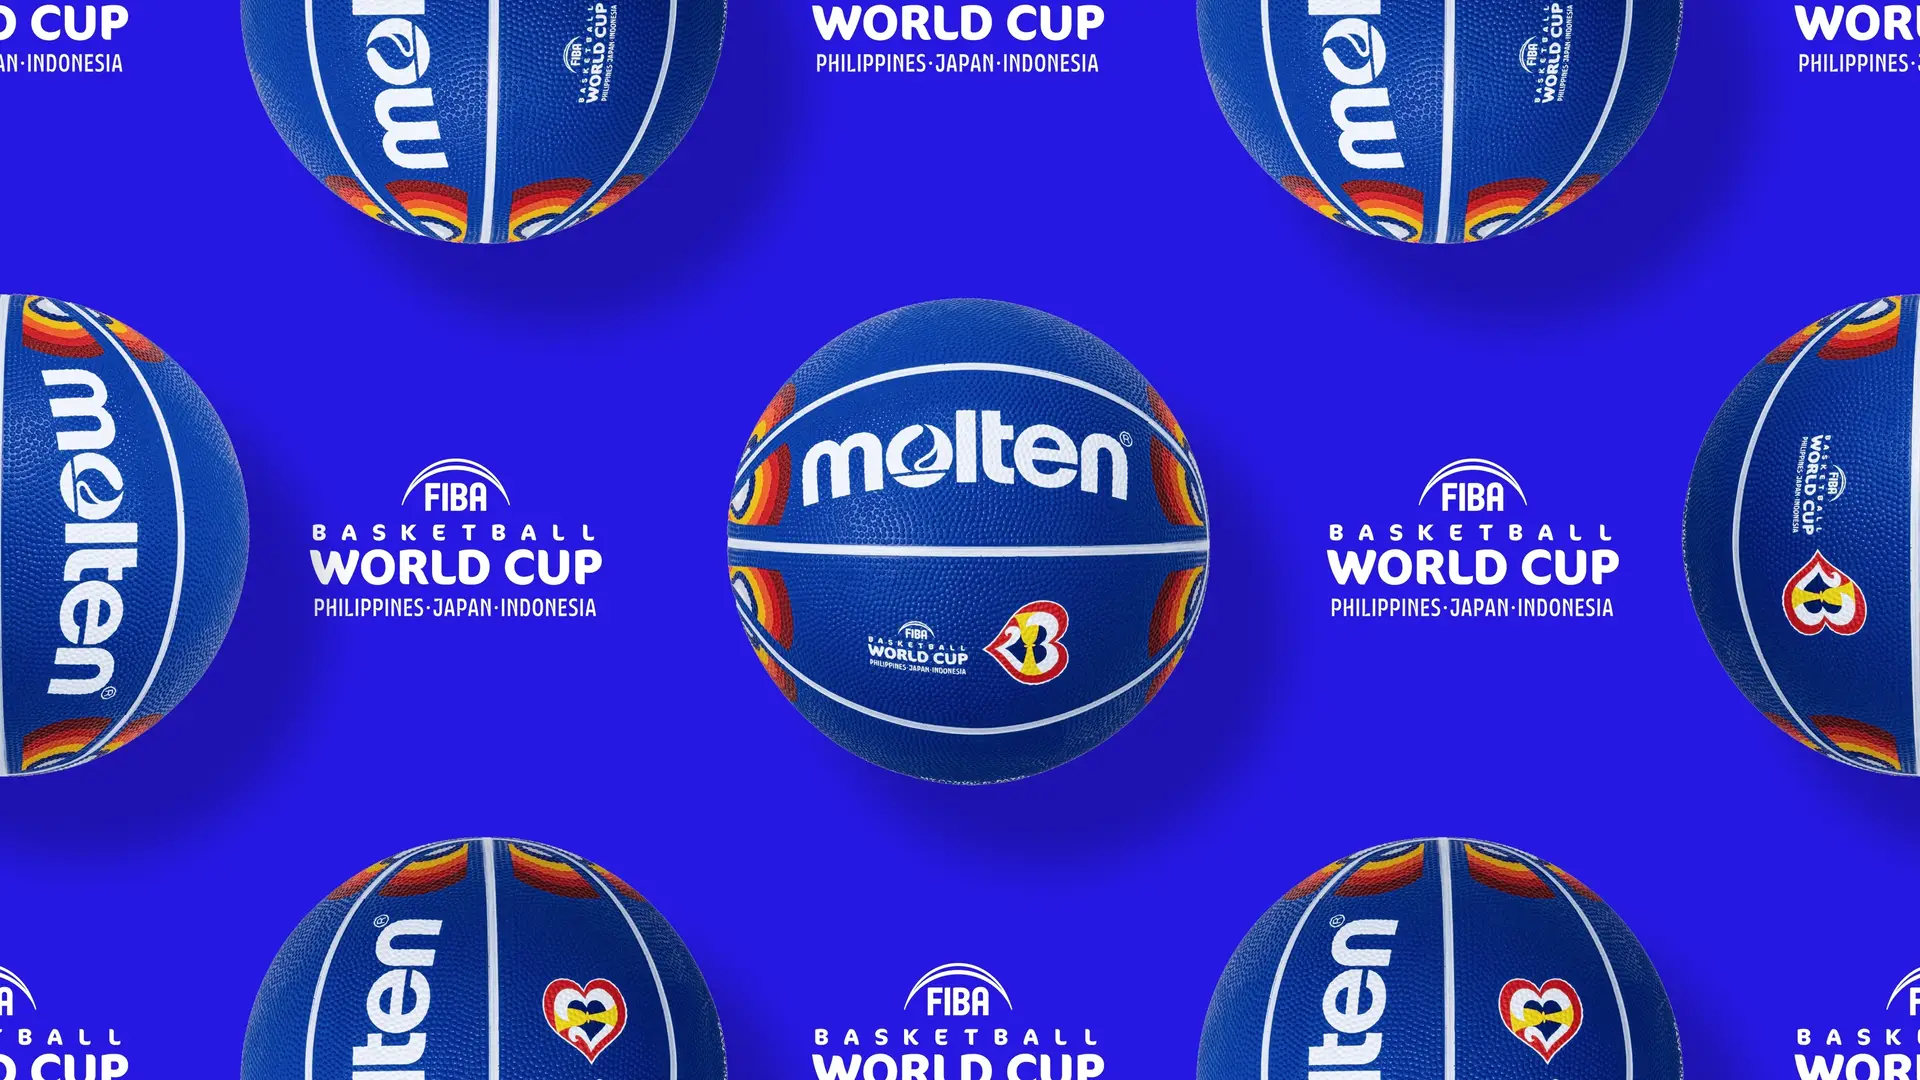 Mosaico de logotipos de la Basketball World Cup o Mundial de baloncesto junto a los balones de la misma competición